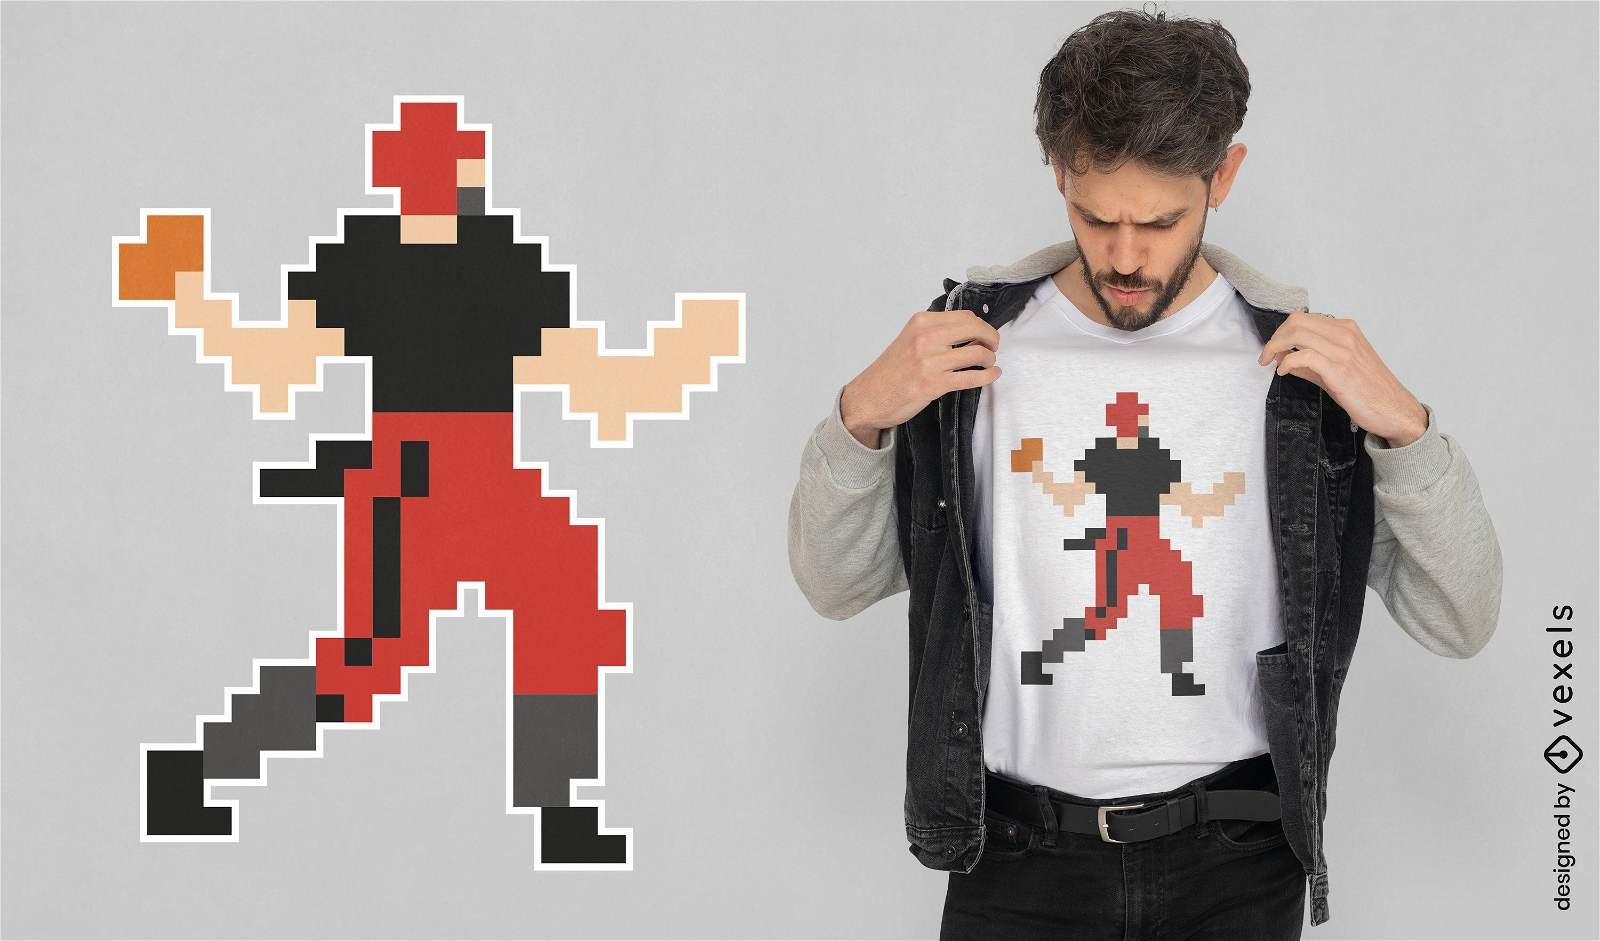 American football player pixel art t-shirt design